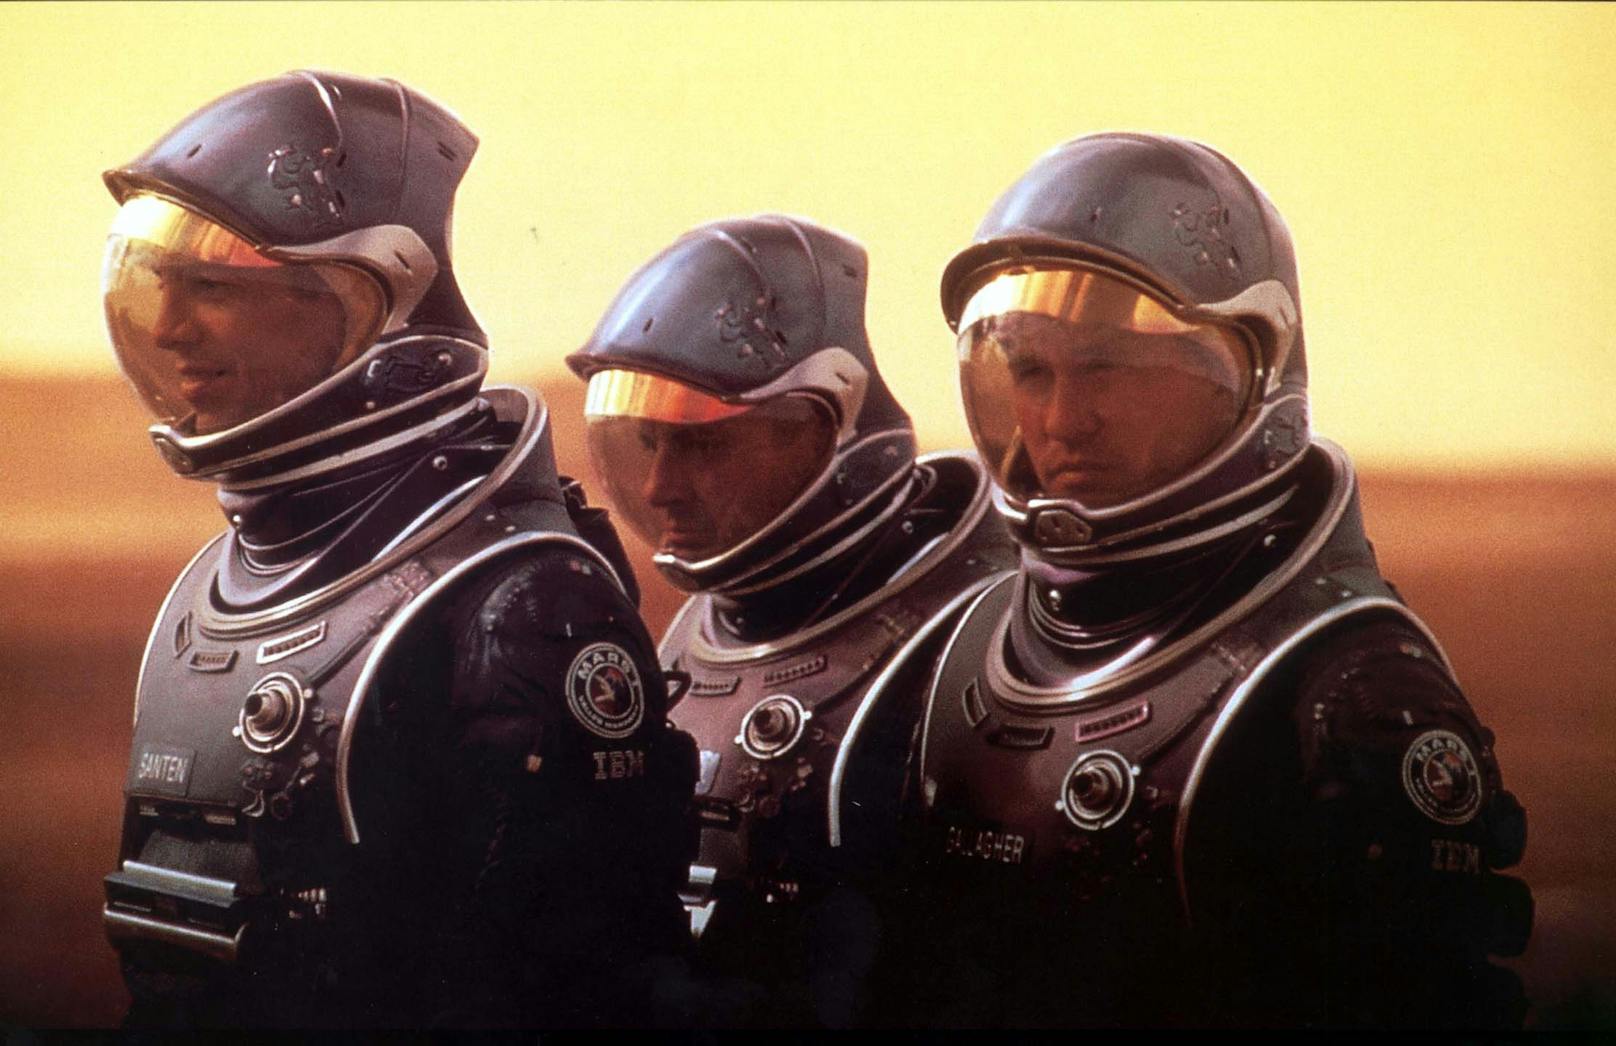 2001 bricht Sizemore im Science-Fiction-Film&nbsp;"Red Planet" mit <strong>Val Kilmer</strong> und <strong>Benjamin Bratt</strong> auf, die Besiedlung des Mars vorzubereiten.&nbsp;